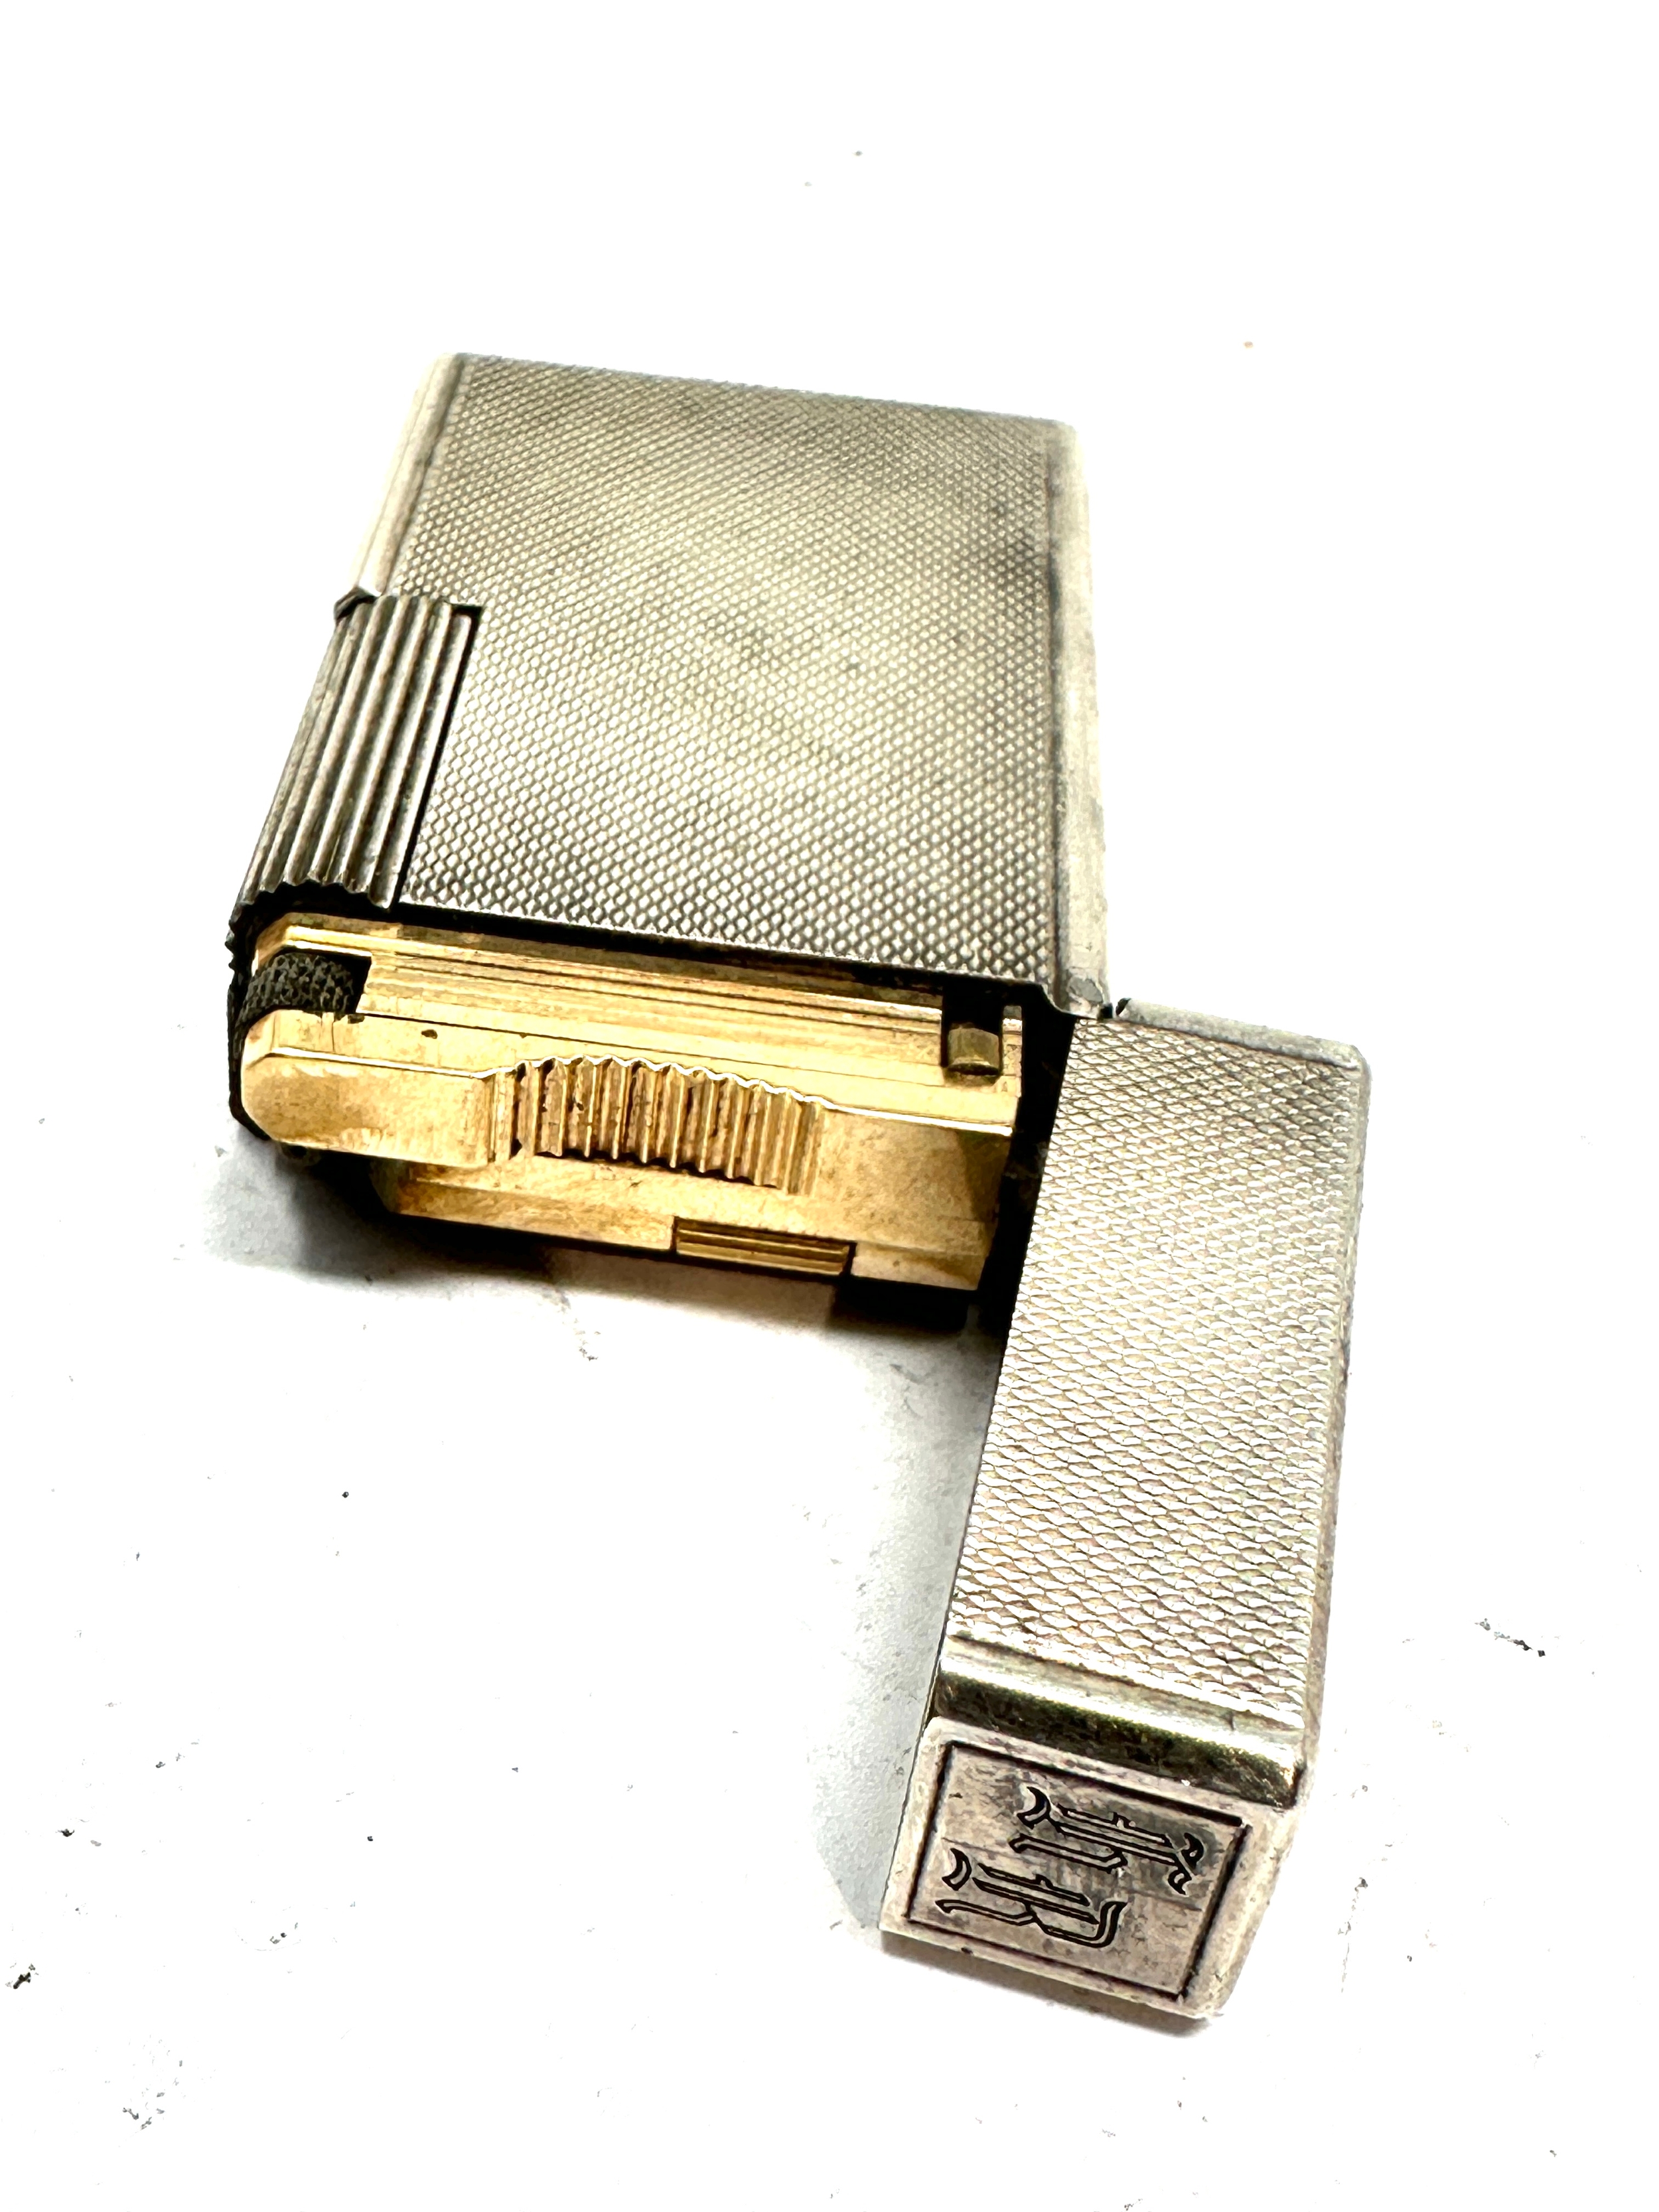 Vintage dupont silver plated cigarette lighter missing filler cap - Image 3 of 4